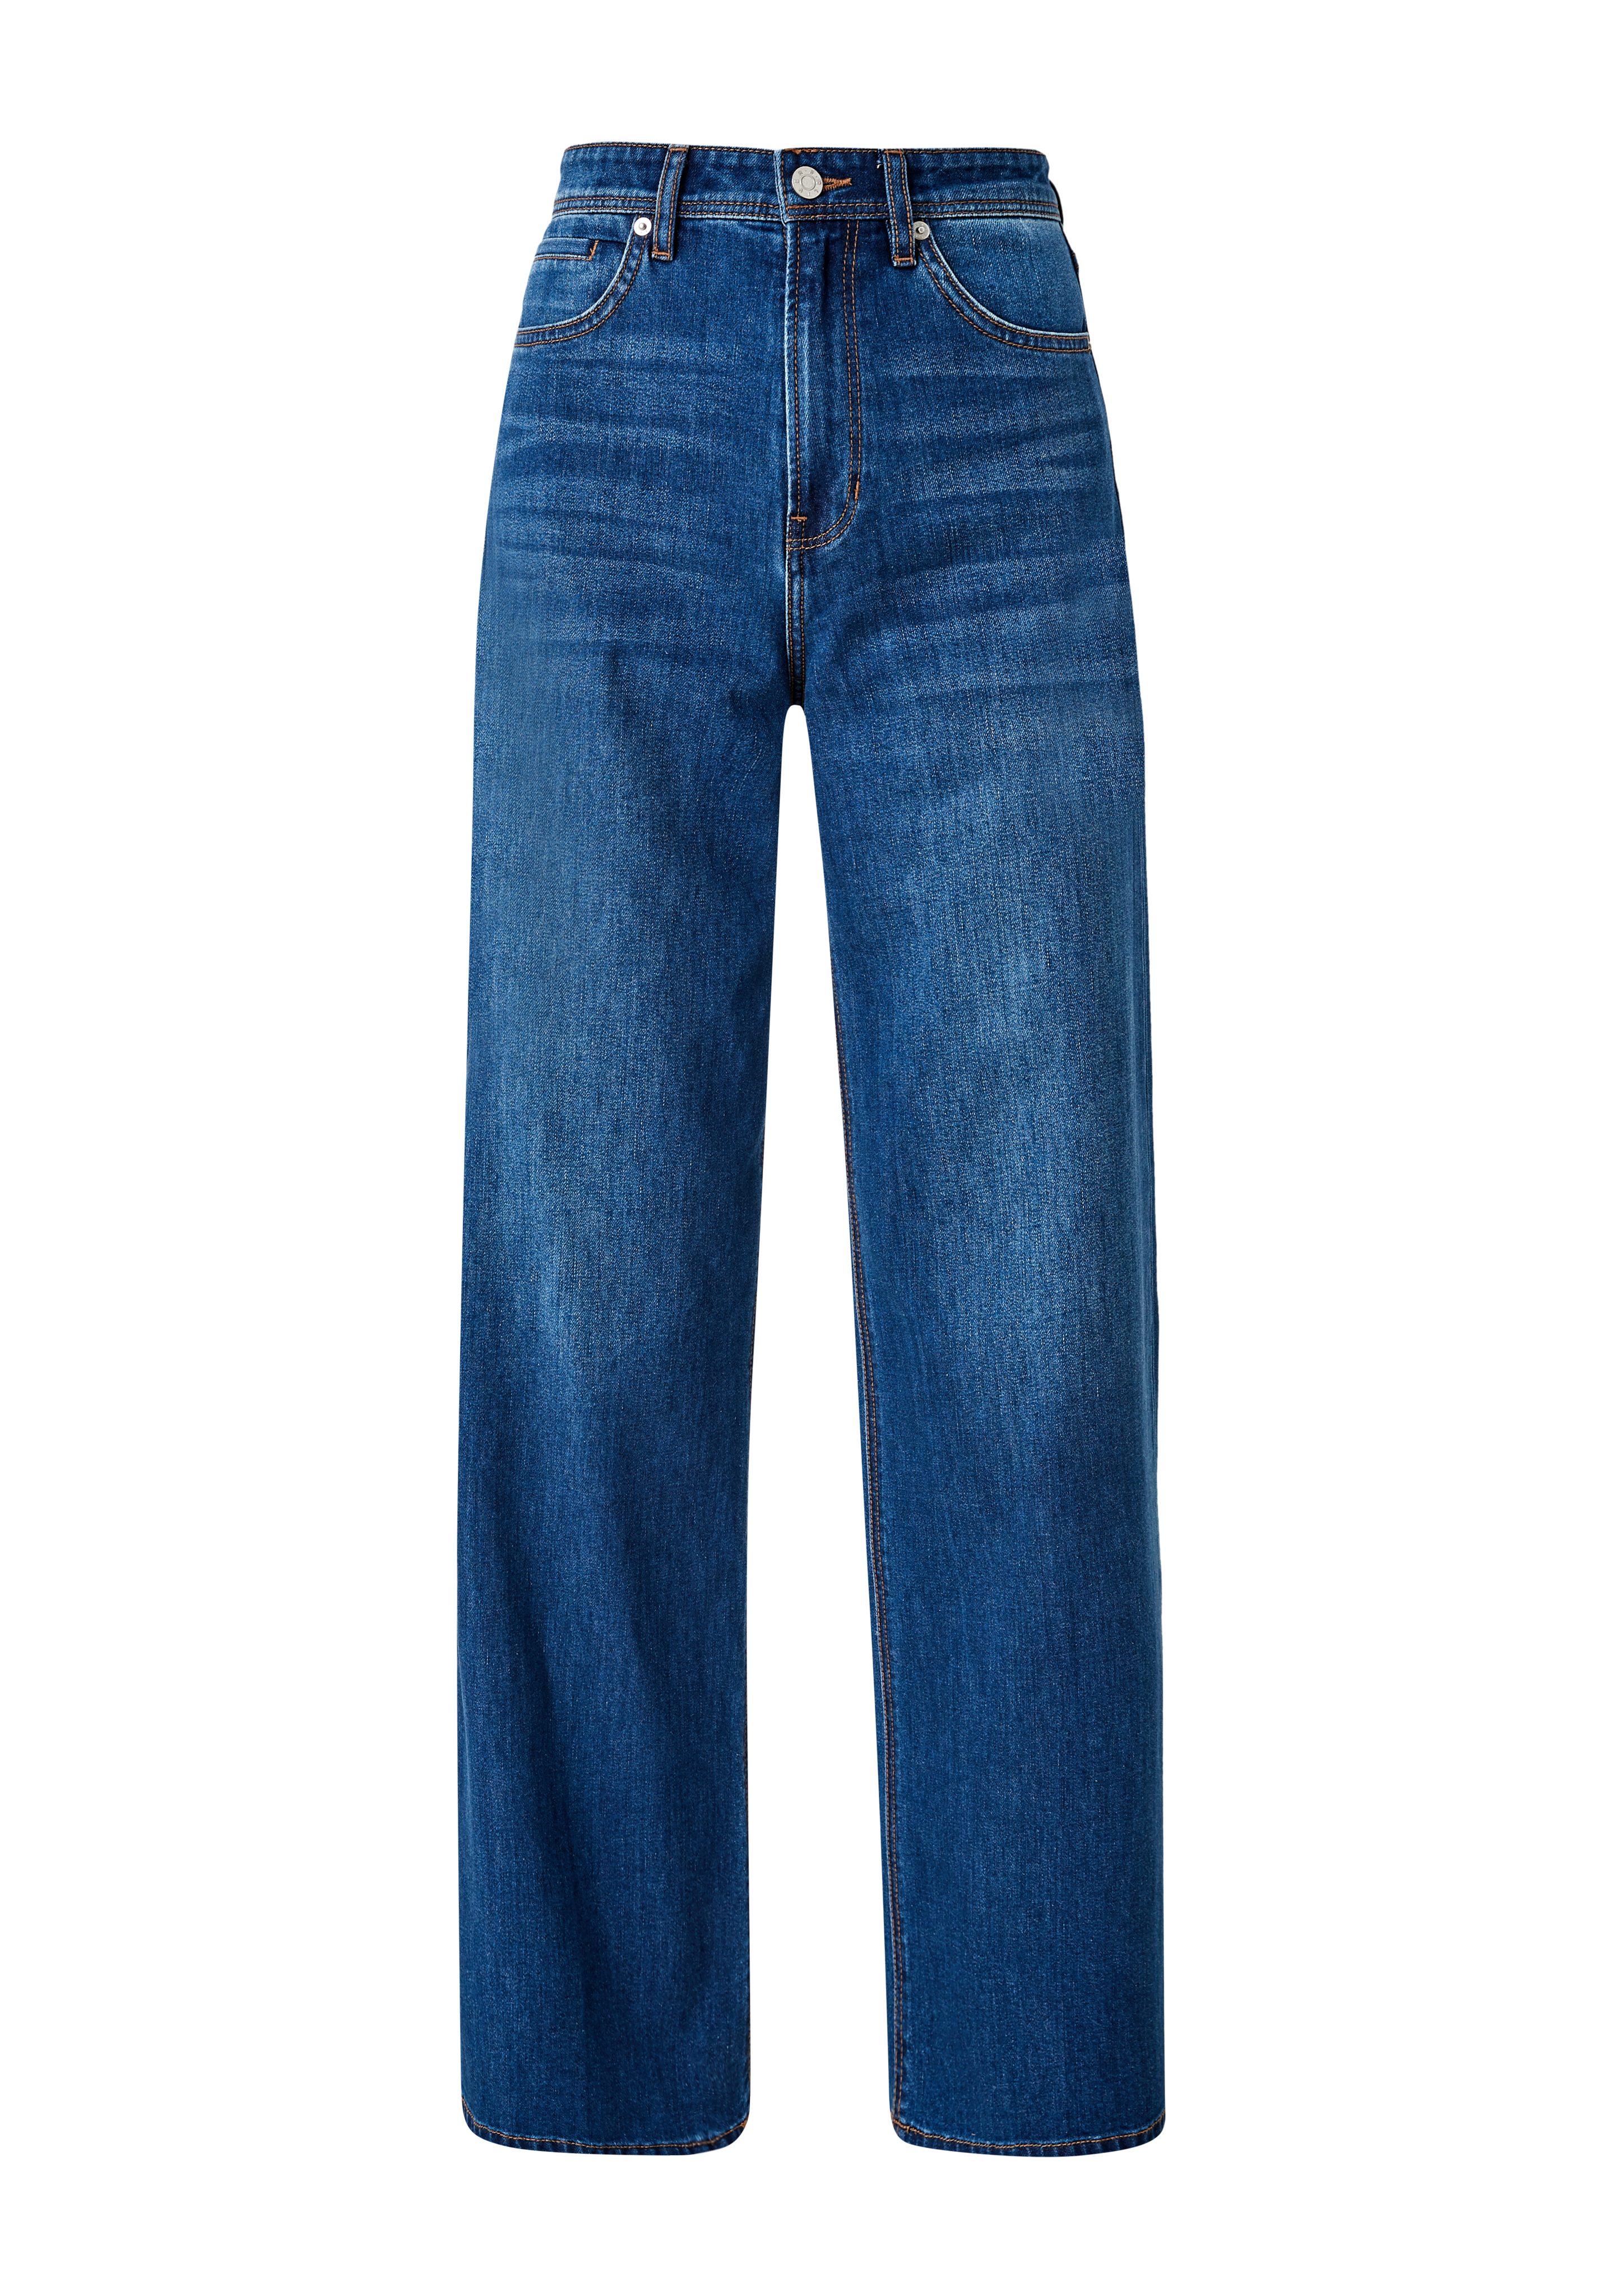 Suri Regular / Jeans Fit Leg Waschung / 5-Pocket-Jeans Rise s.Oliver High Super / Wide